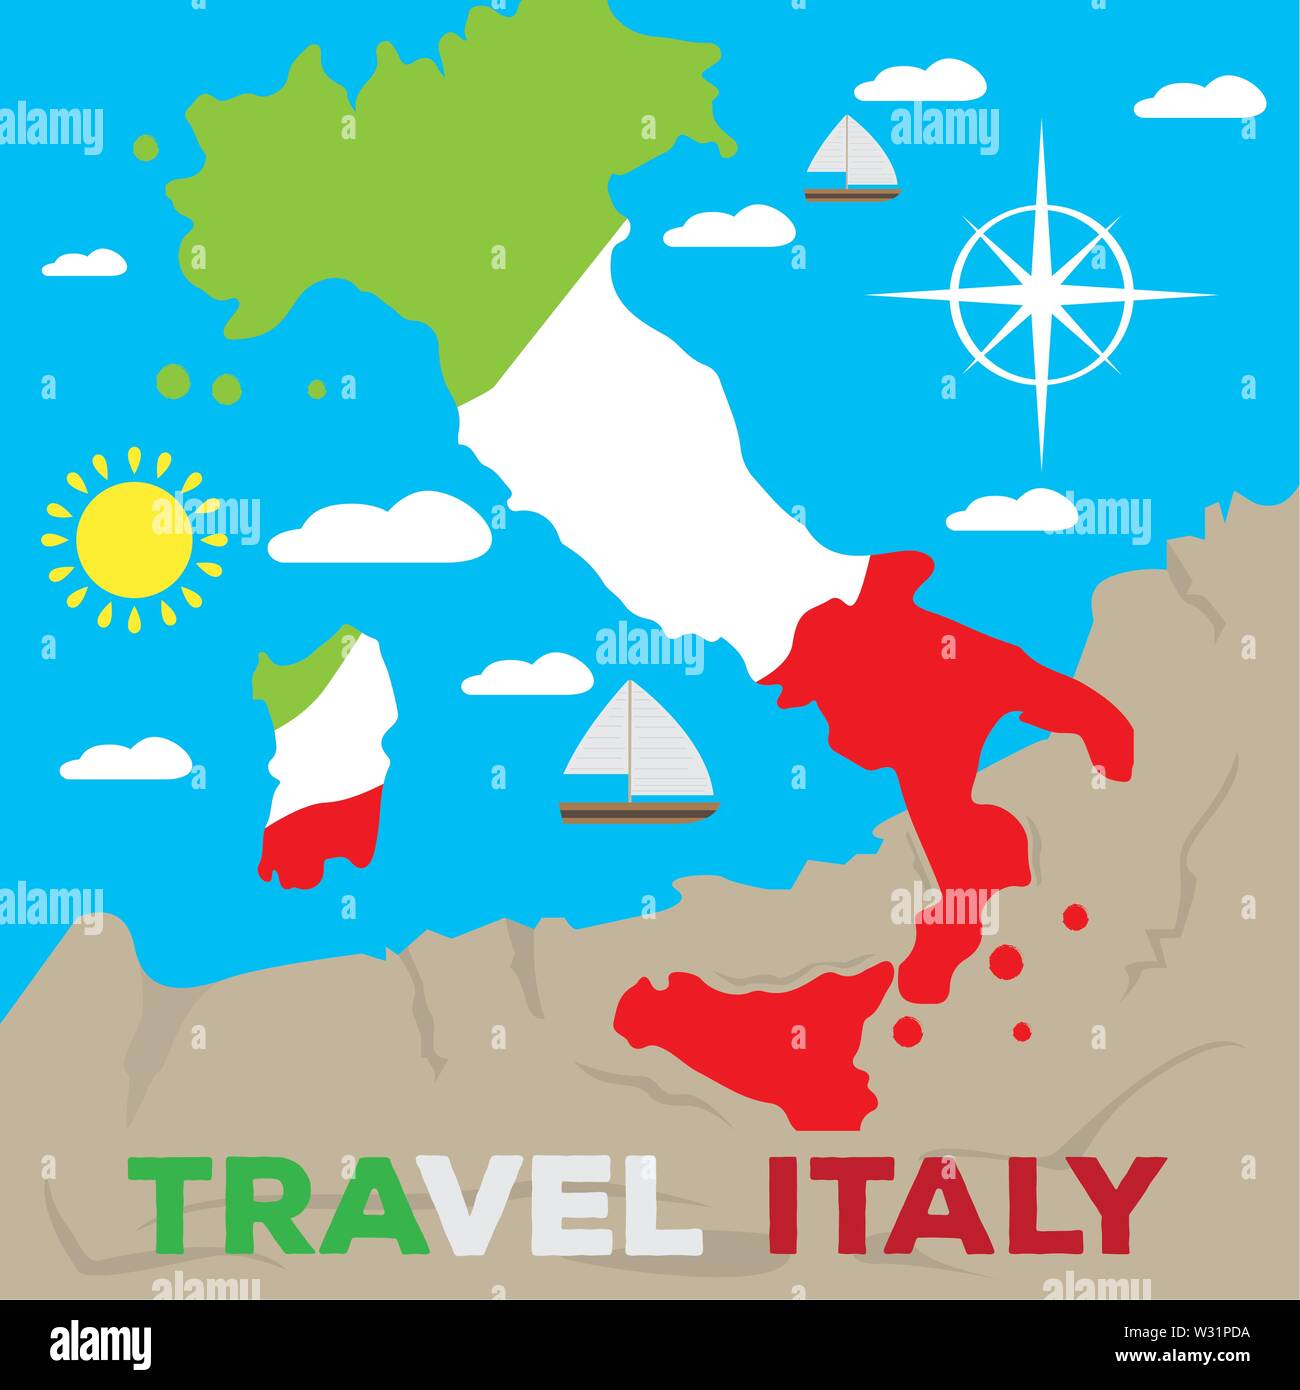 Farbige Karte von Italien mit seiner Farbe Flagge. Reisen nach Italien - Vektor Stock Vektor